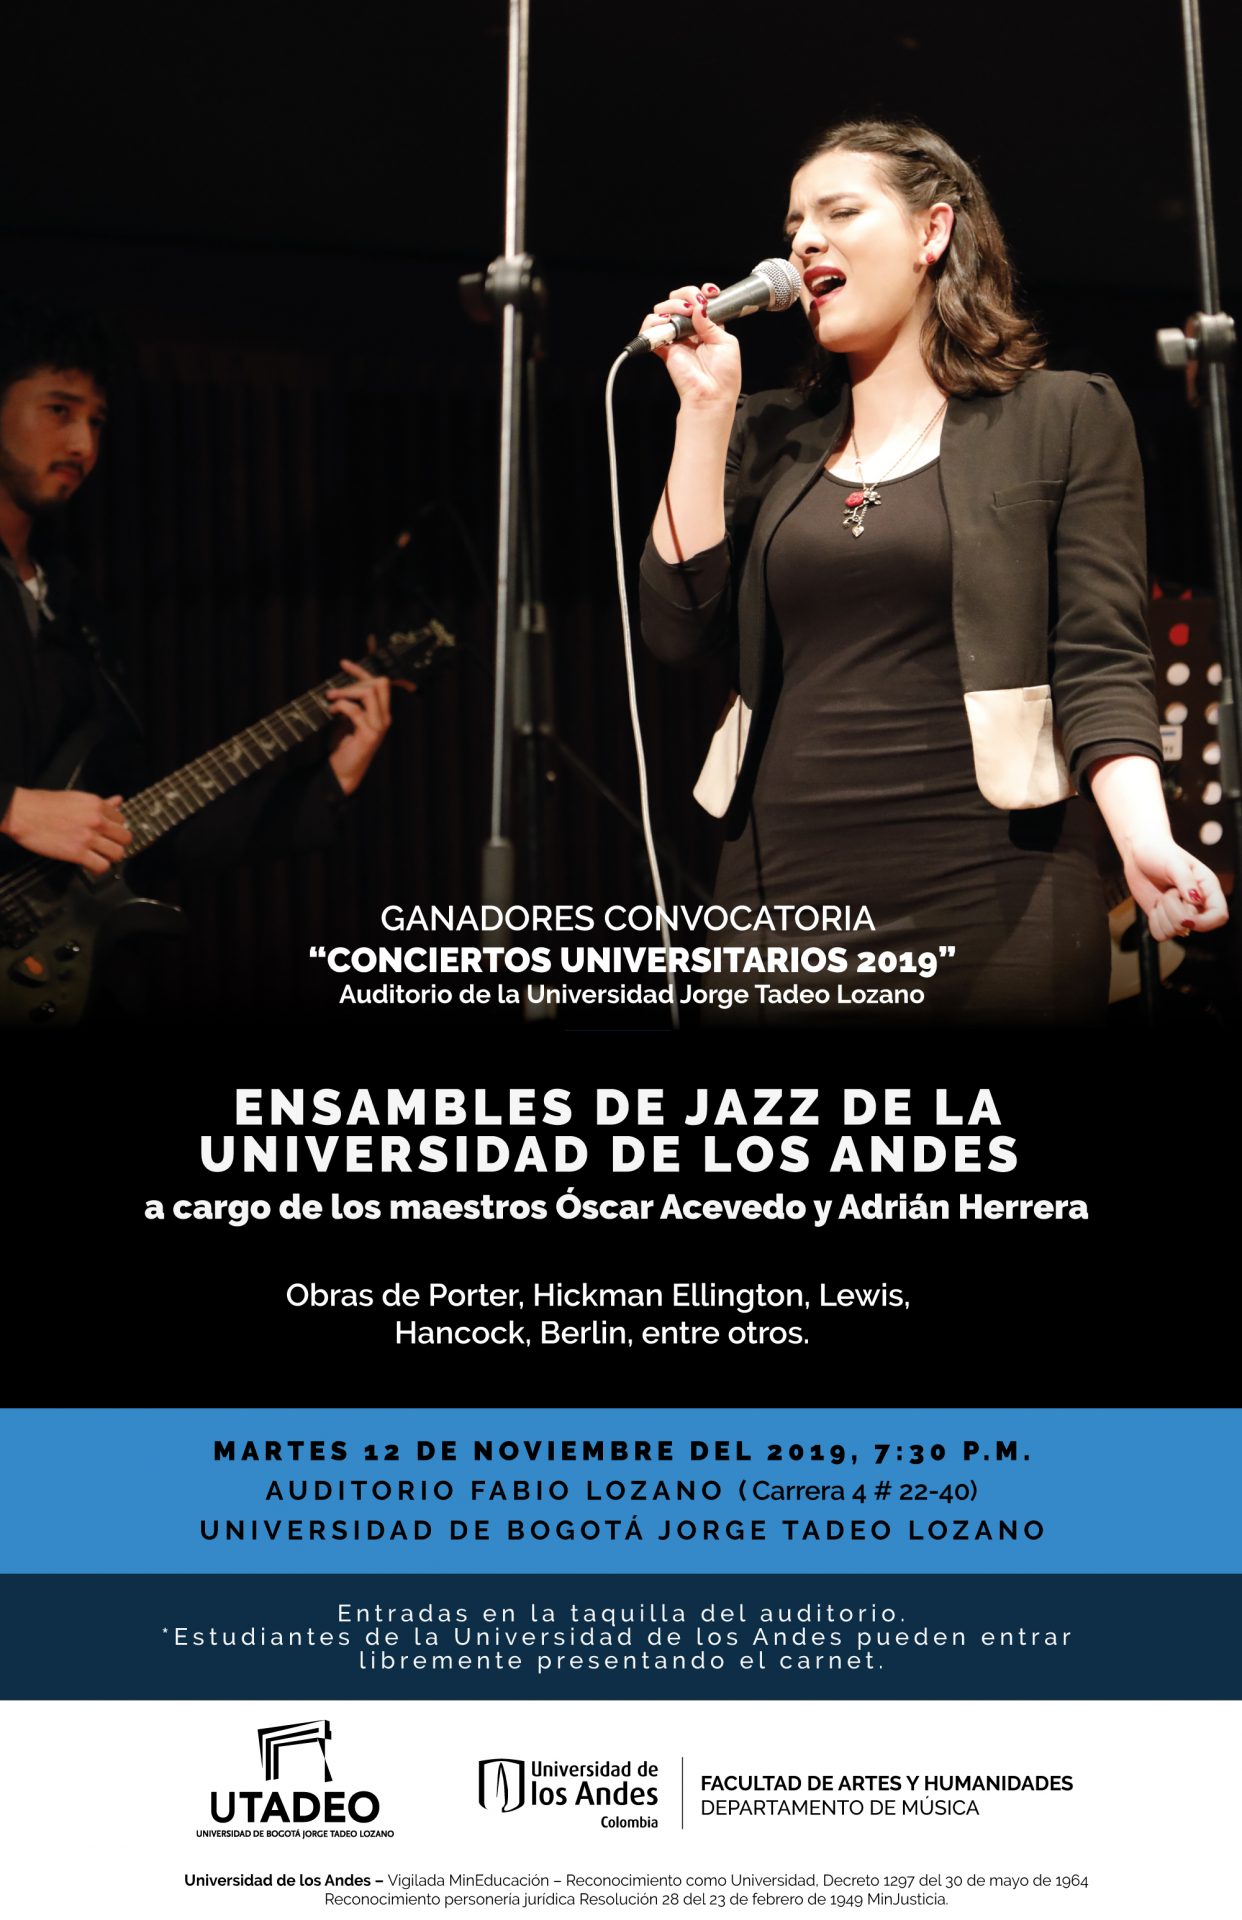 Concierto de los Ensambles de Jazz de la Universidad de los Andes, ganadores de la convocatoria 